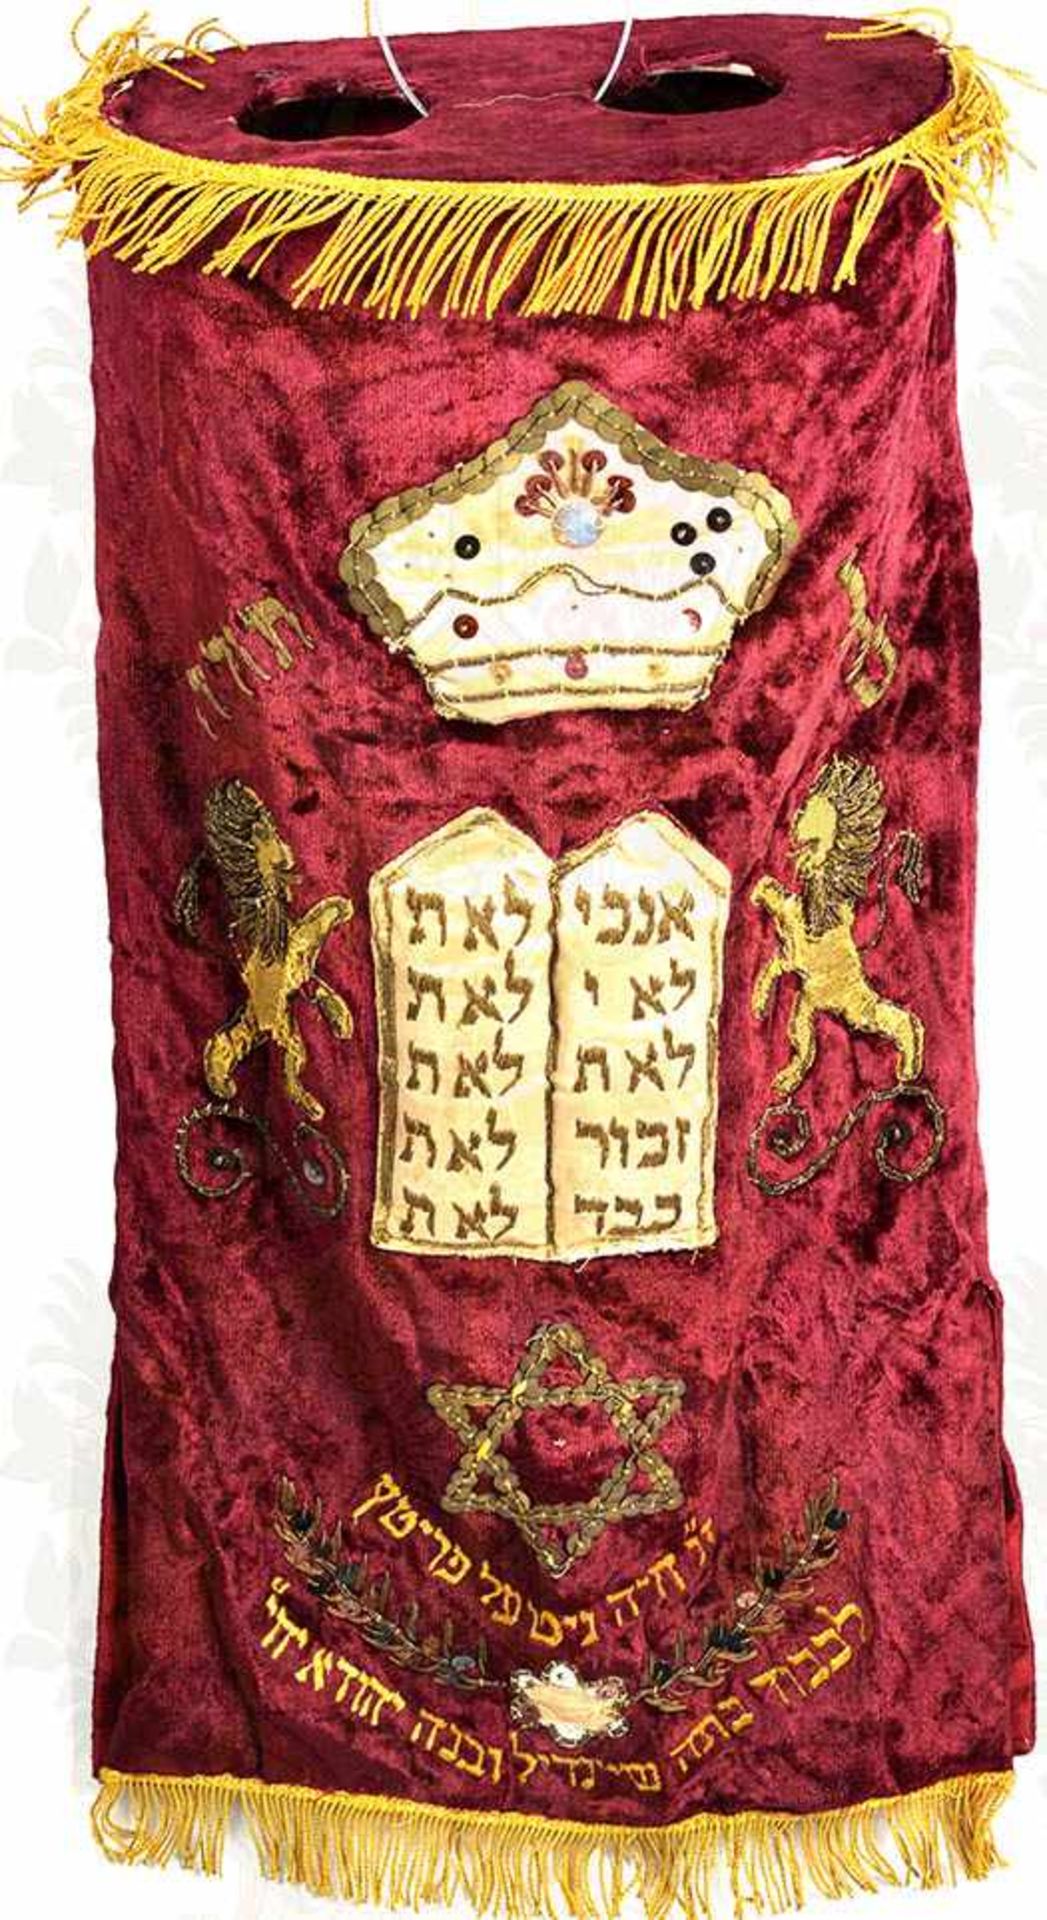 TORA-MANTEL, dient zum Schutz u. der Aufbewahrung der Torarolle in der Synagoge, weinroter